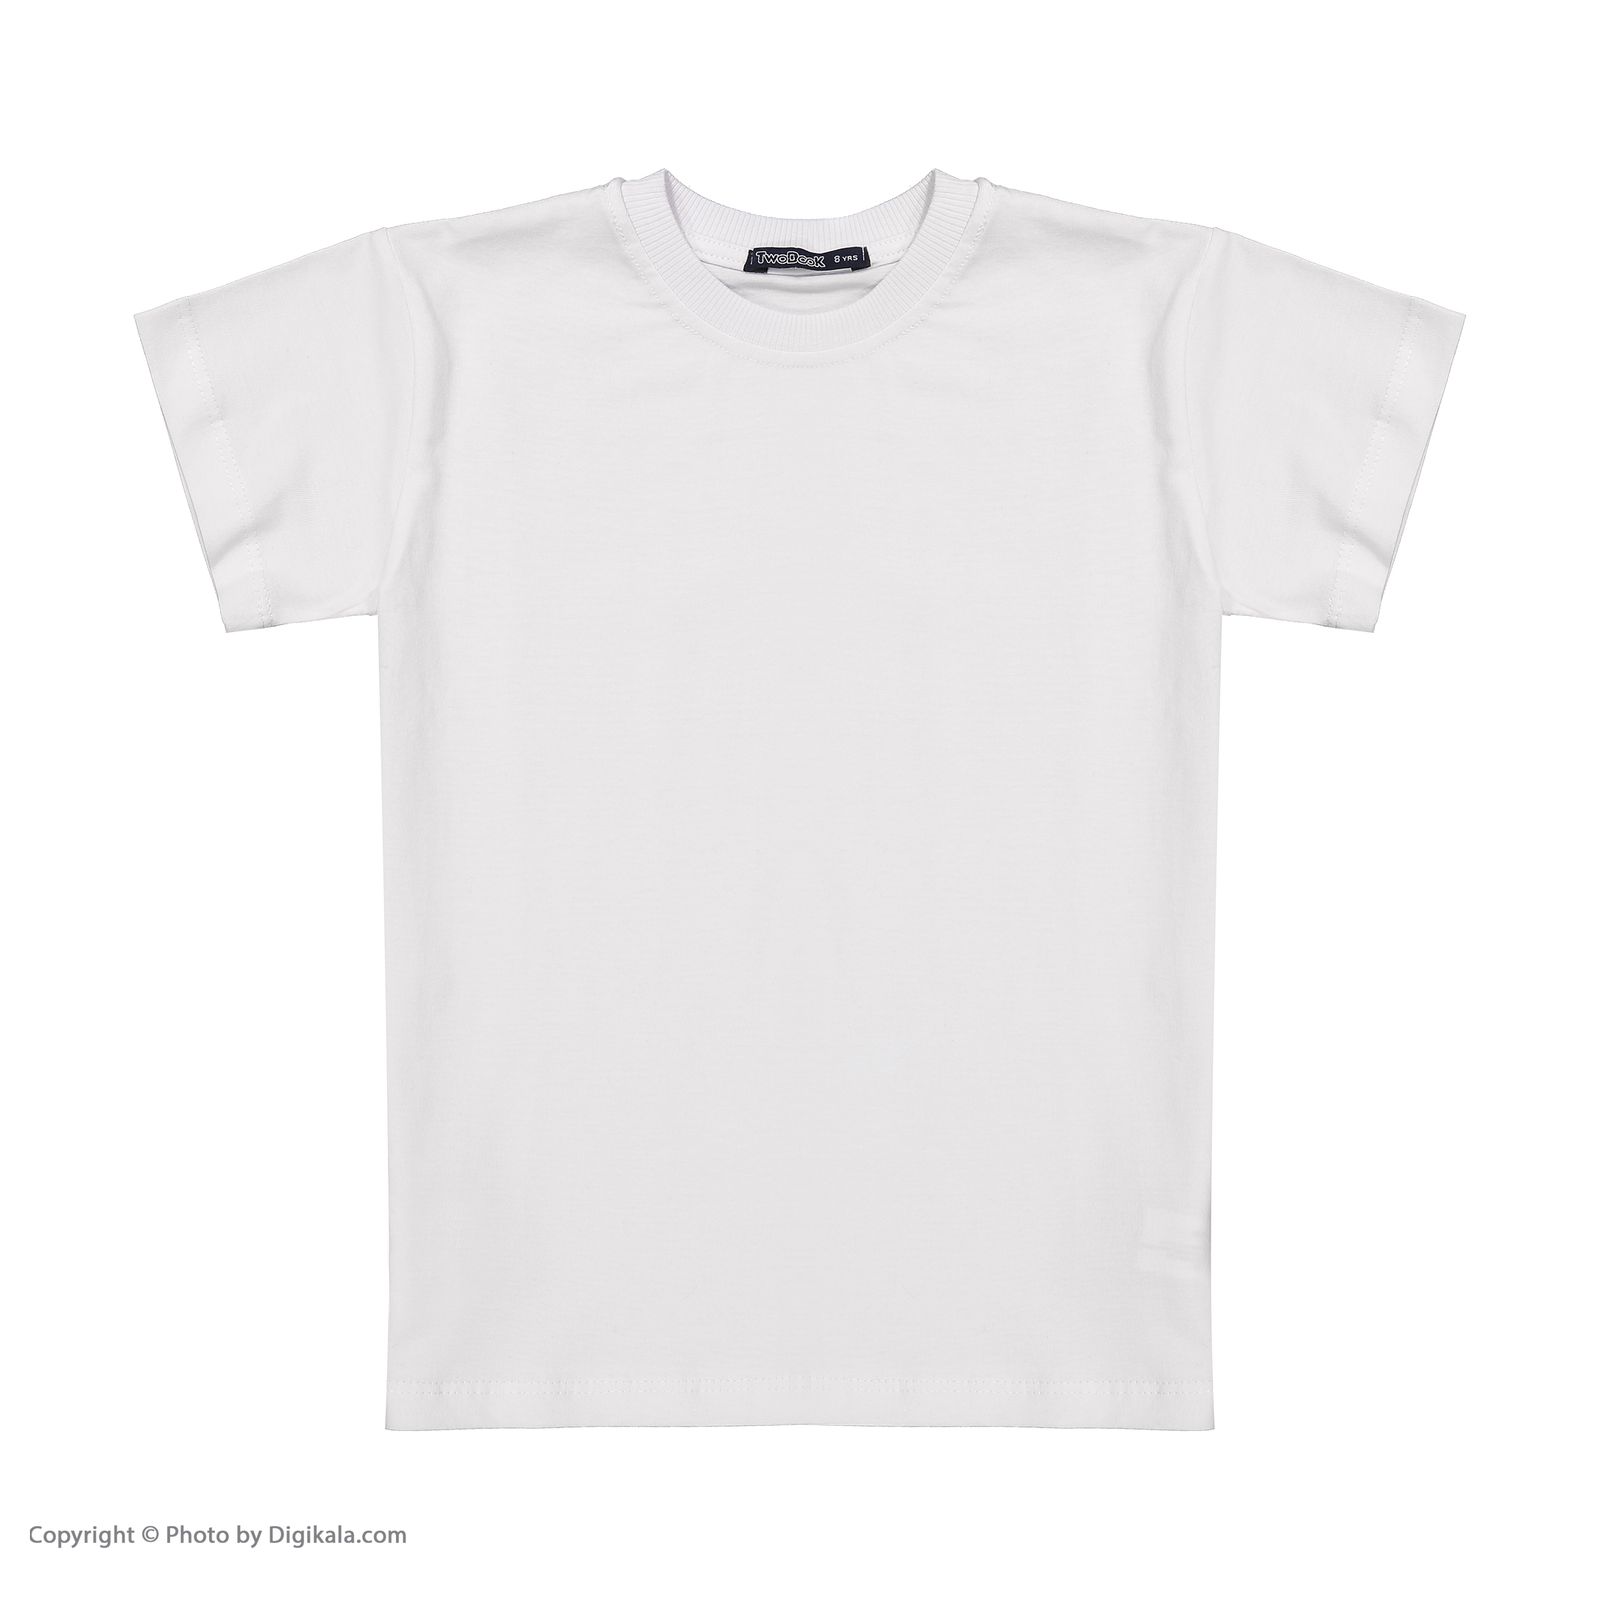 تی شرت آستین کوتاه دخترانه تودوک مدل 2151614-01 -  - 2